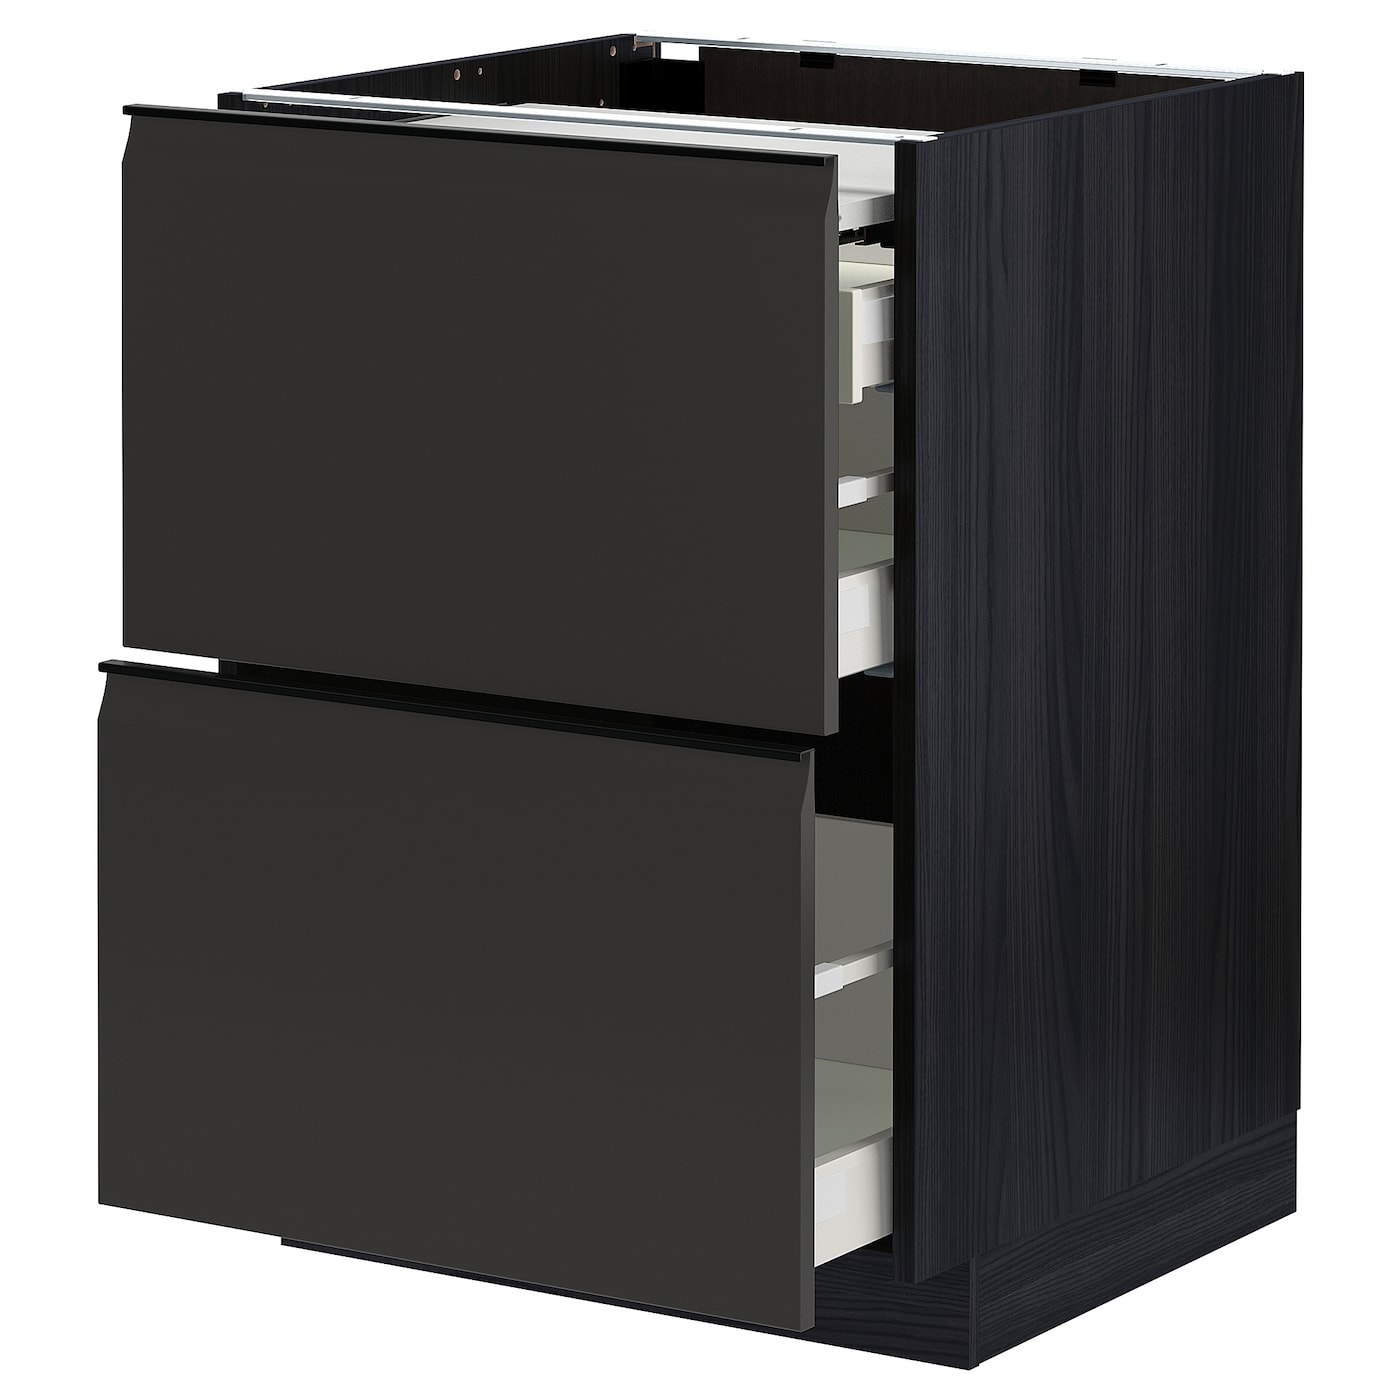 Напольный шкаф - METOD / MAXIMERA IKEA/ МЕТОД/ МАКСИМЕРА ИКЕА,  88х60 см, черный/серый